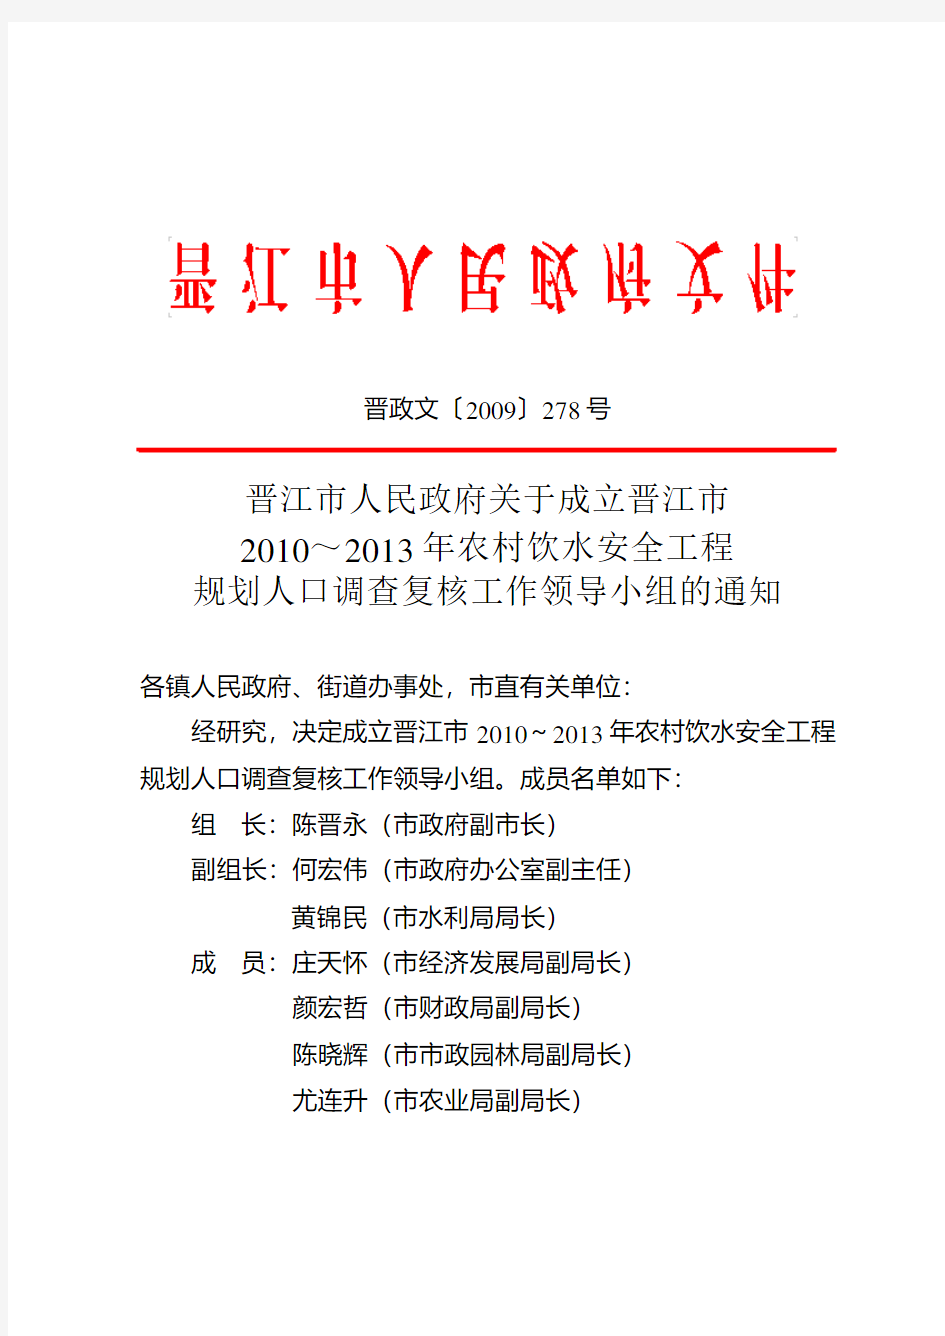 晋江市人民政府关于成立晋江市2010～2013年农村饮水安全工程